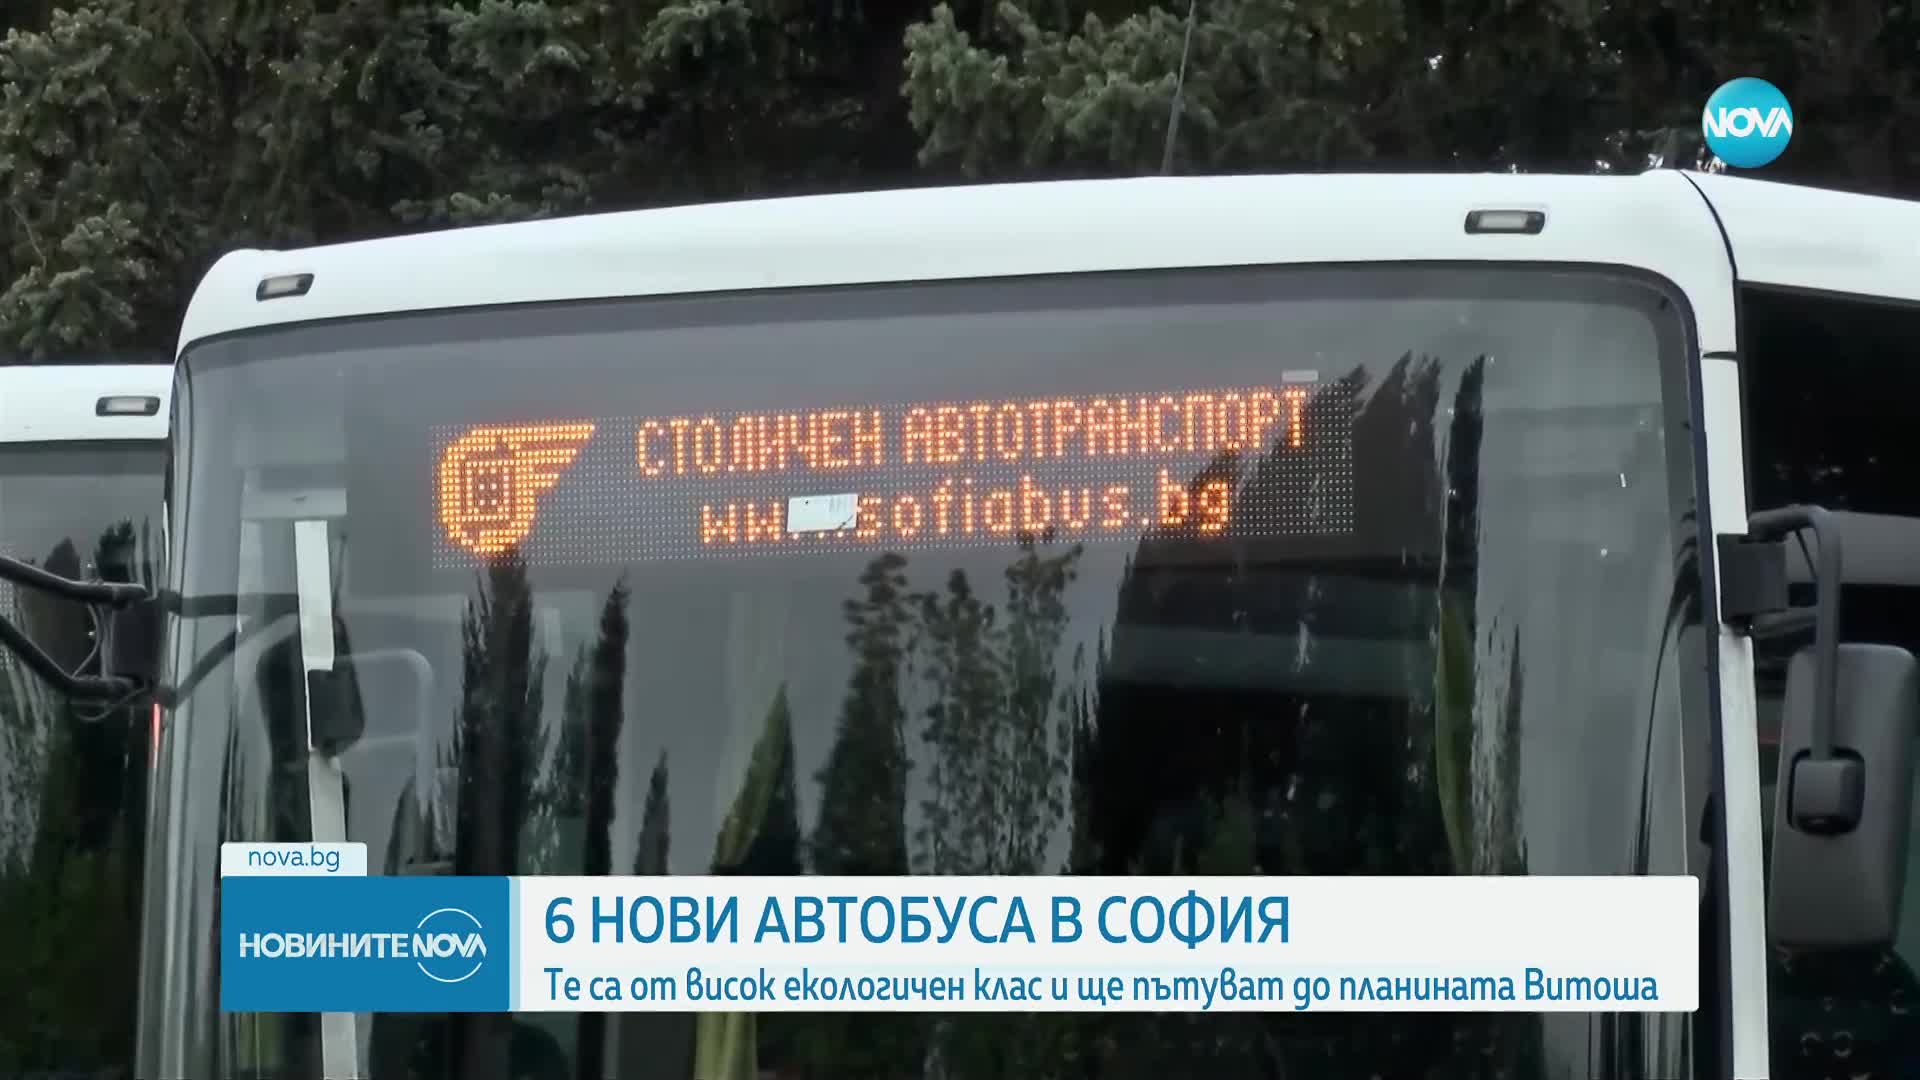 Пускат още 6 нови автобуса до Витоша